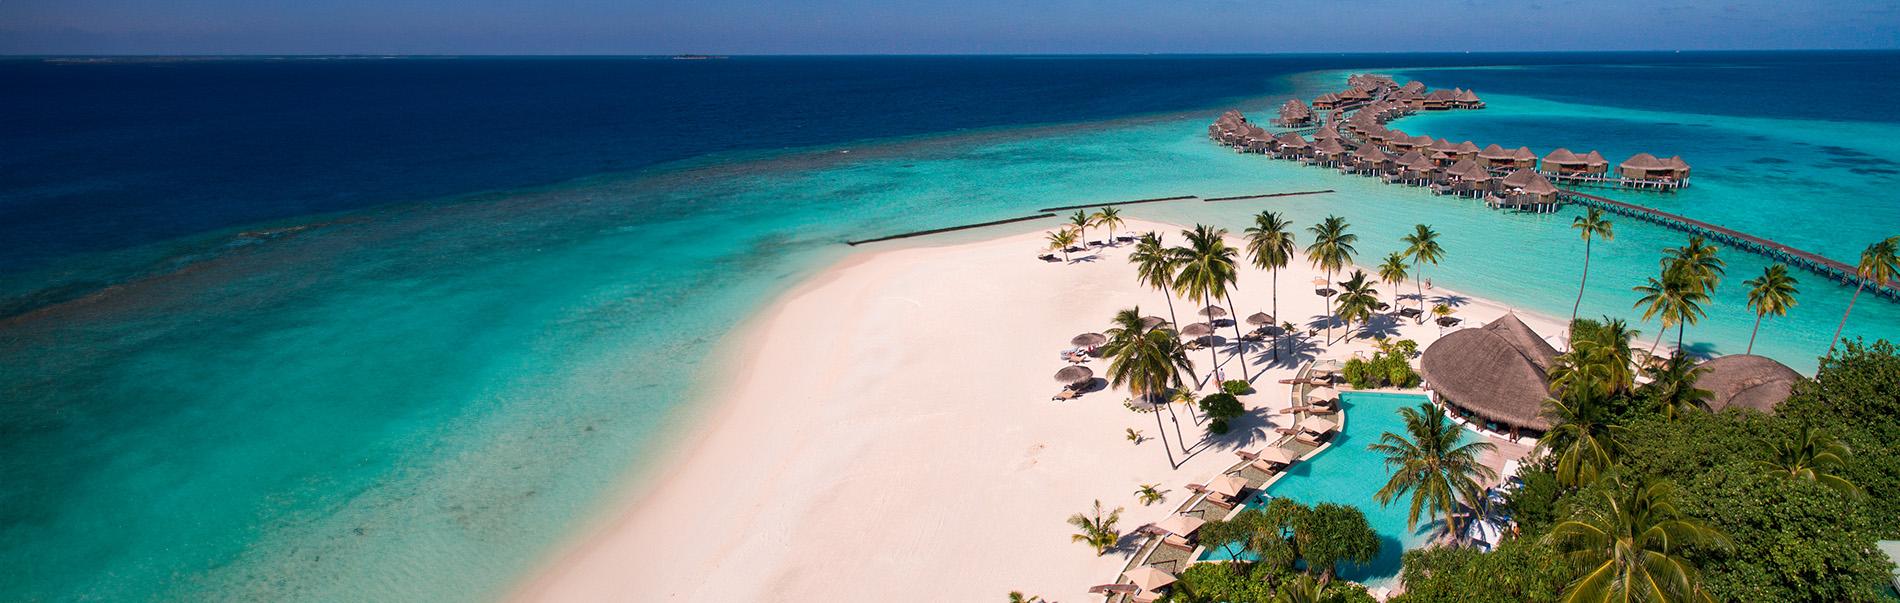 Vacanze alle Maldive | Turisanda